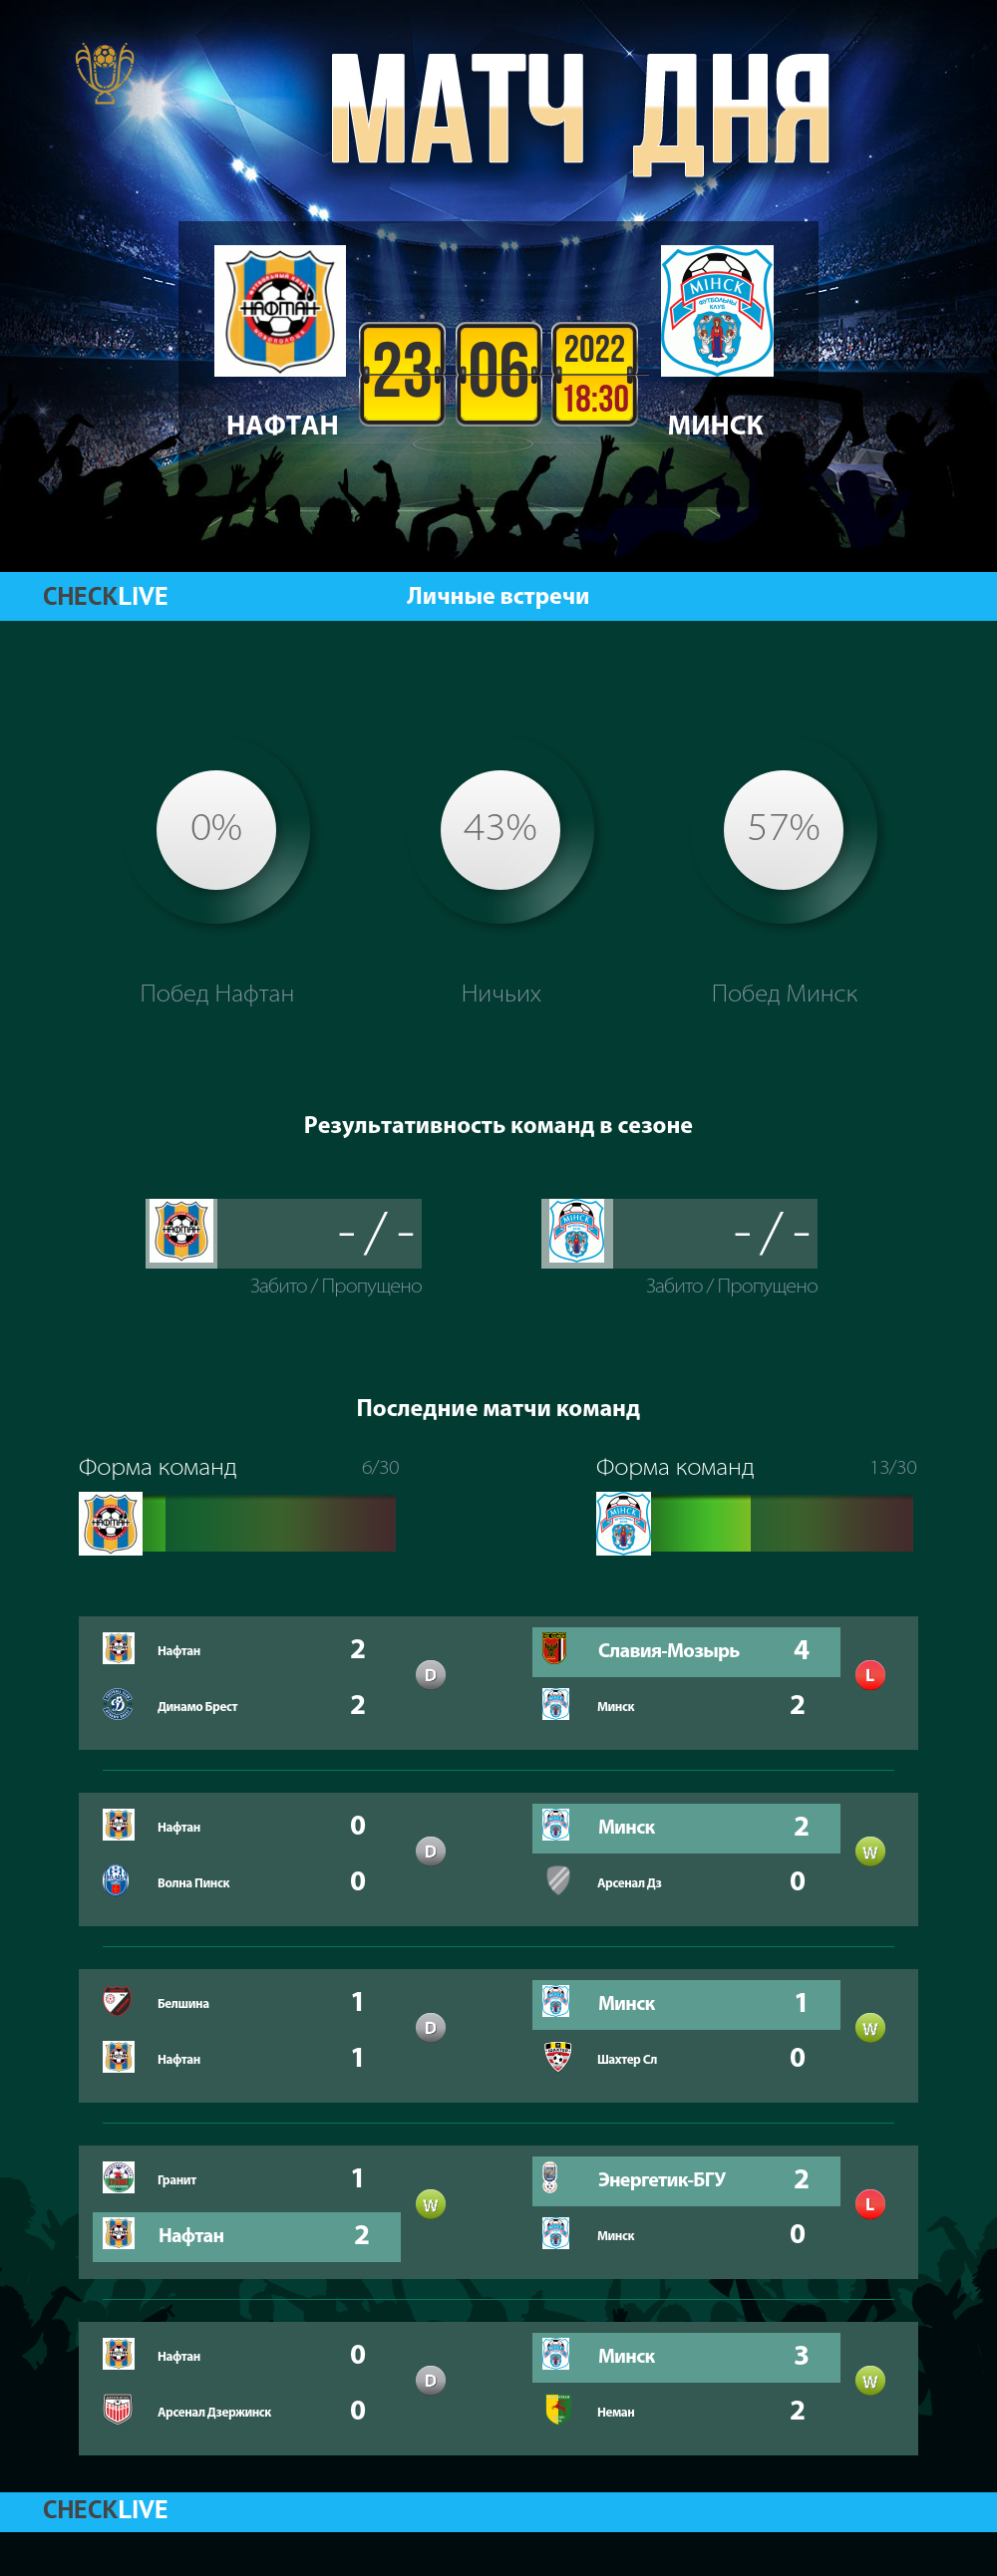 Инфографика Нафтан и Минск матч дня 23.06.2022